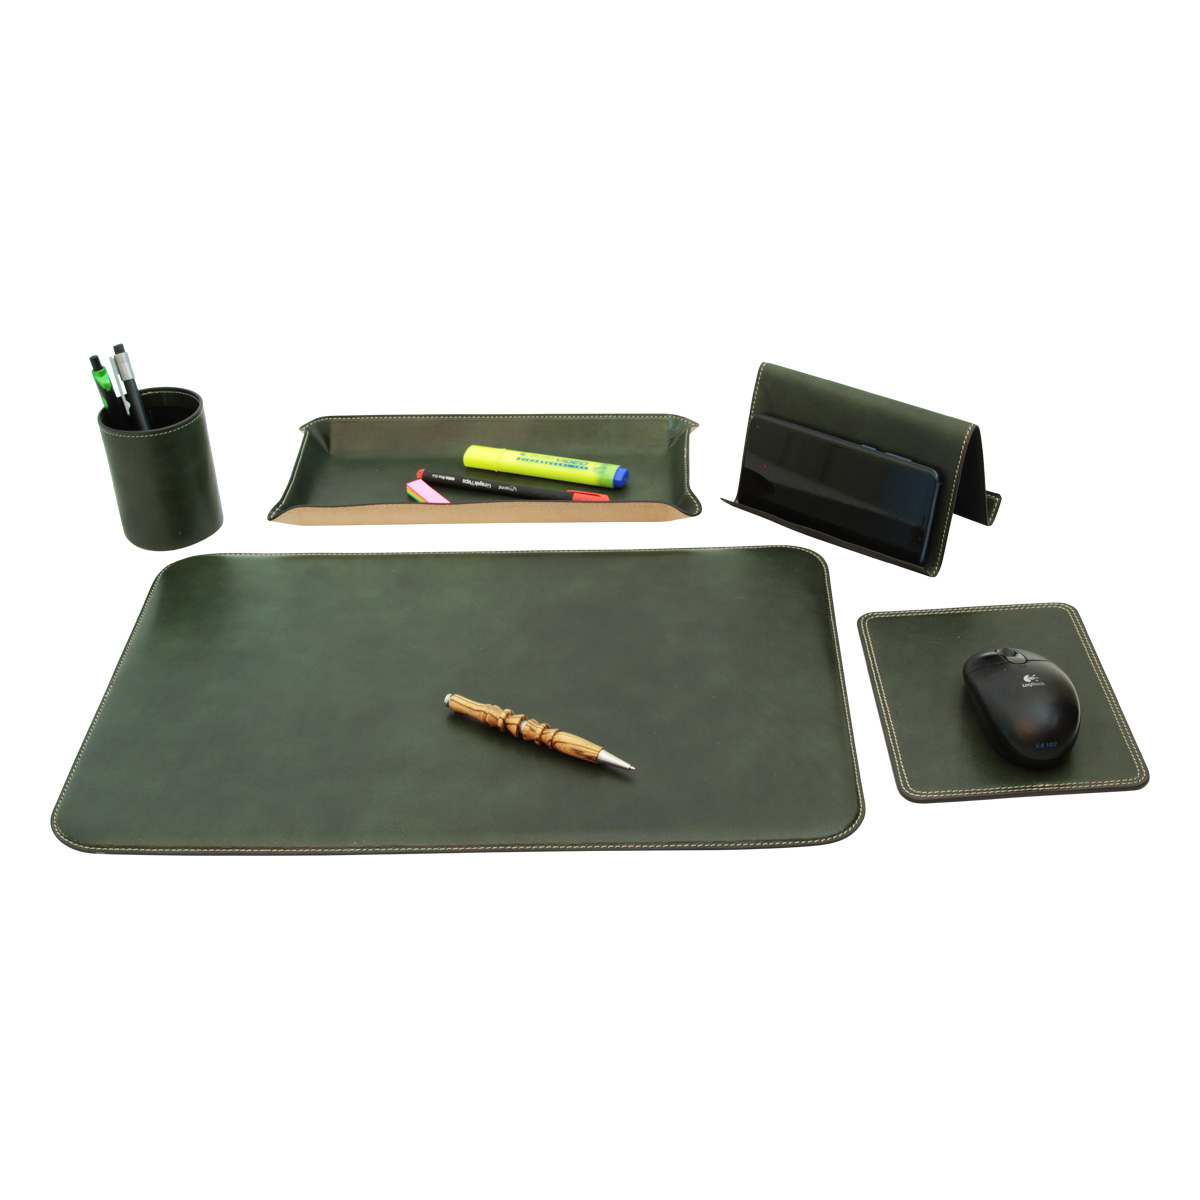 Leather desk kit - 5 pcs   green | 769089VE UK | Old Angler Firenze